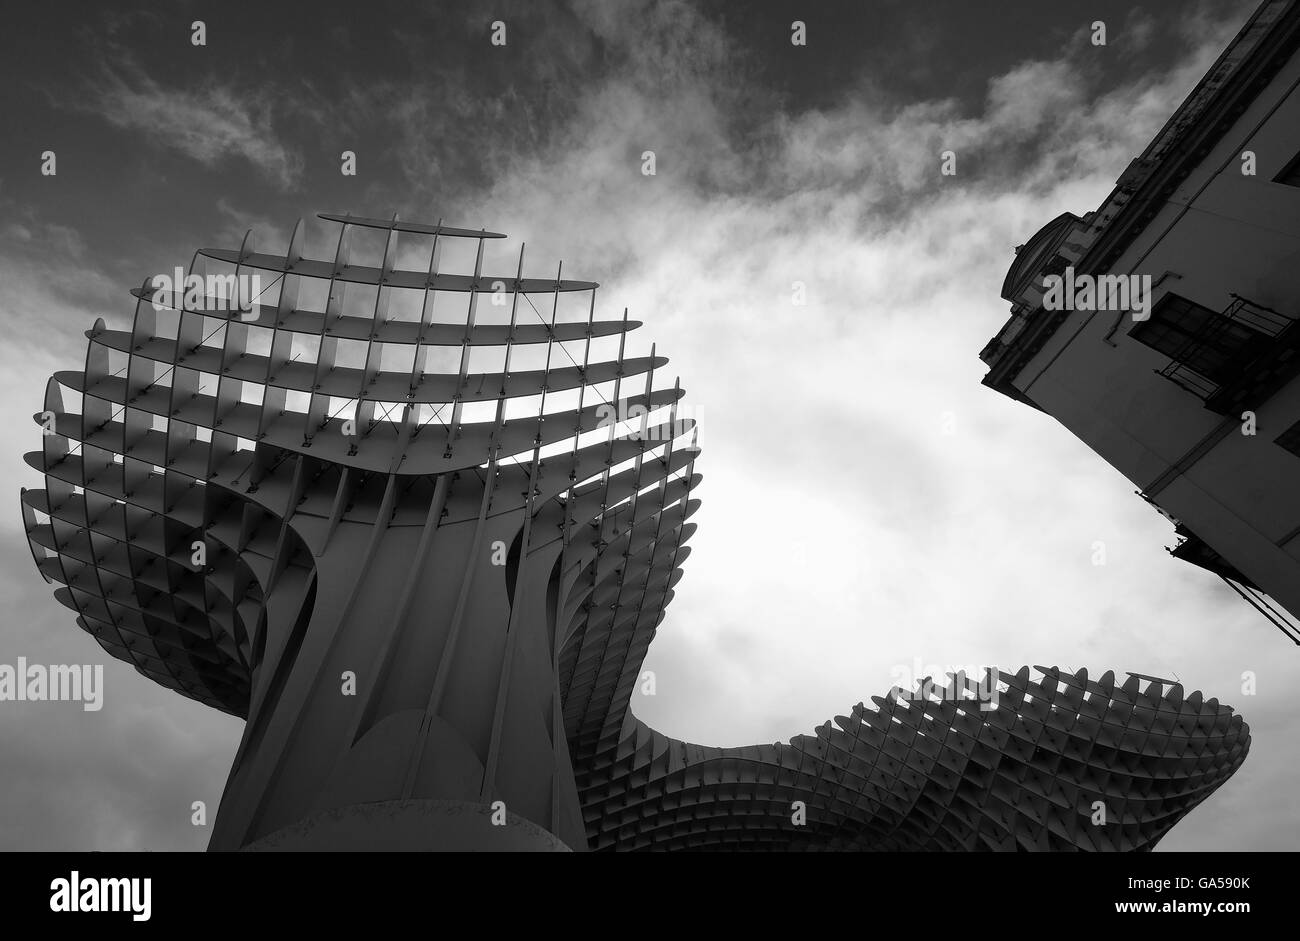 Metropol parasol la più grande struttura in legno nel mondo architetto Jurgen Mayer Laza de la Encarnacion Siviglia; Spagna b&W Foto Stock